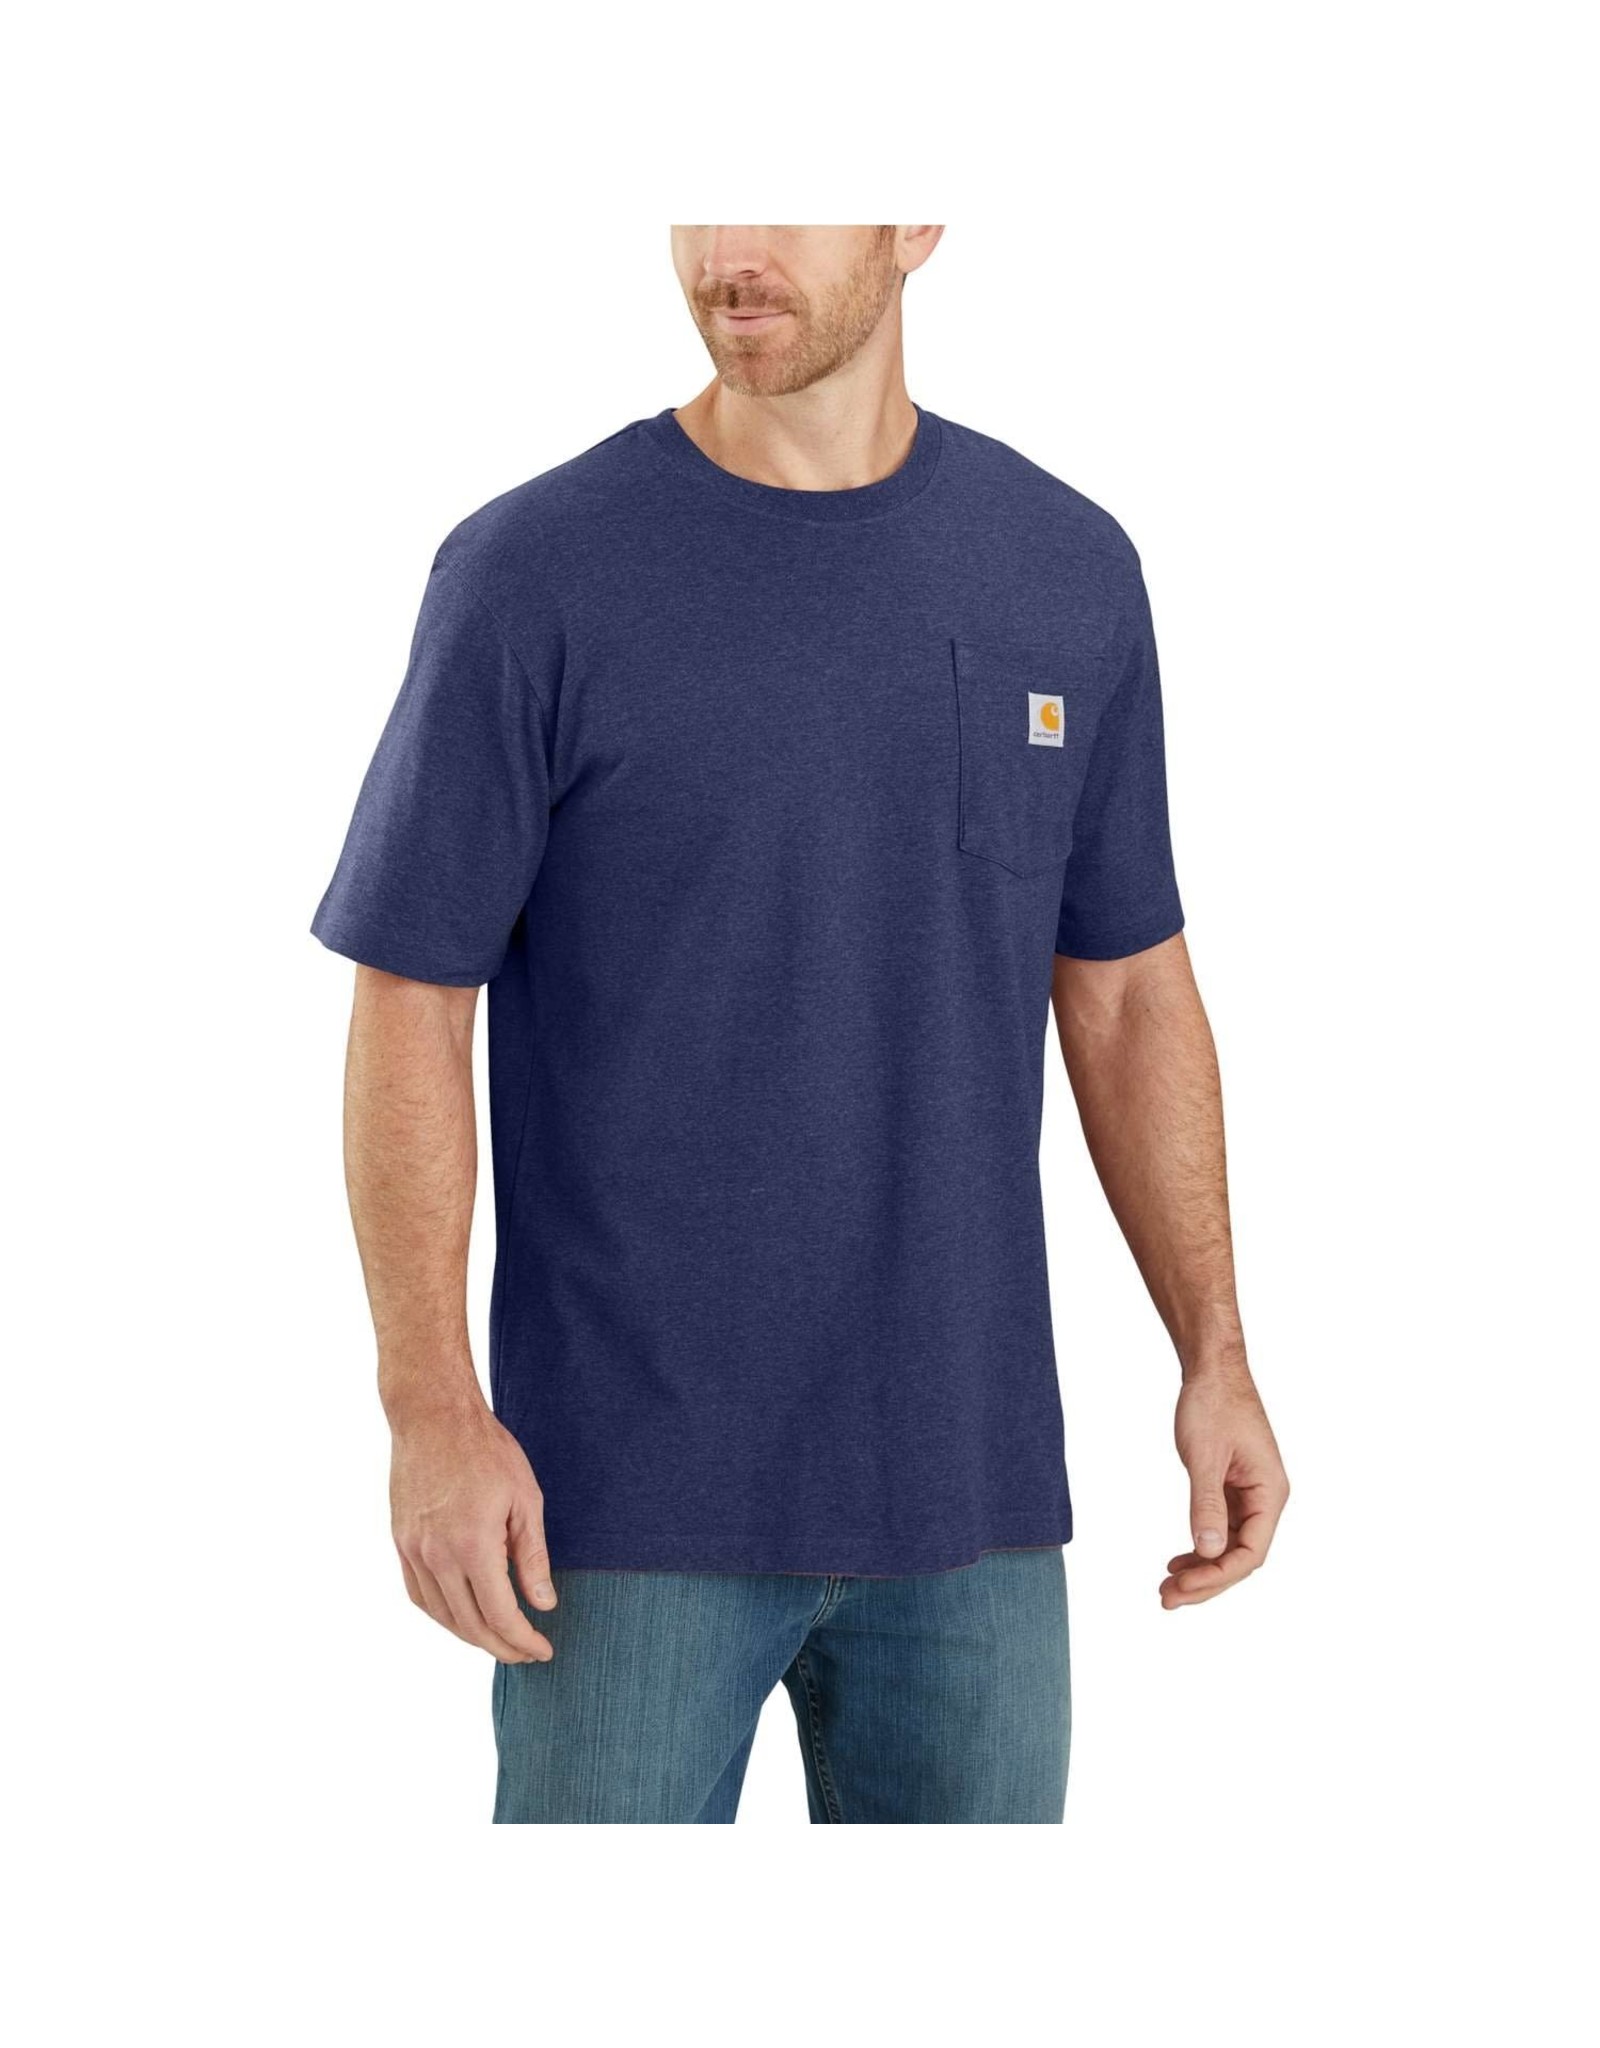 Carhartt Mens K87-413 Cobalt Blue Work T-Shirt - Nelson Royal's